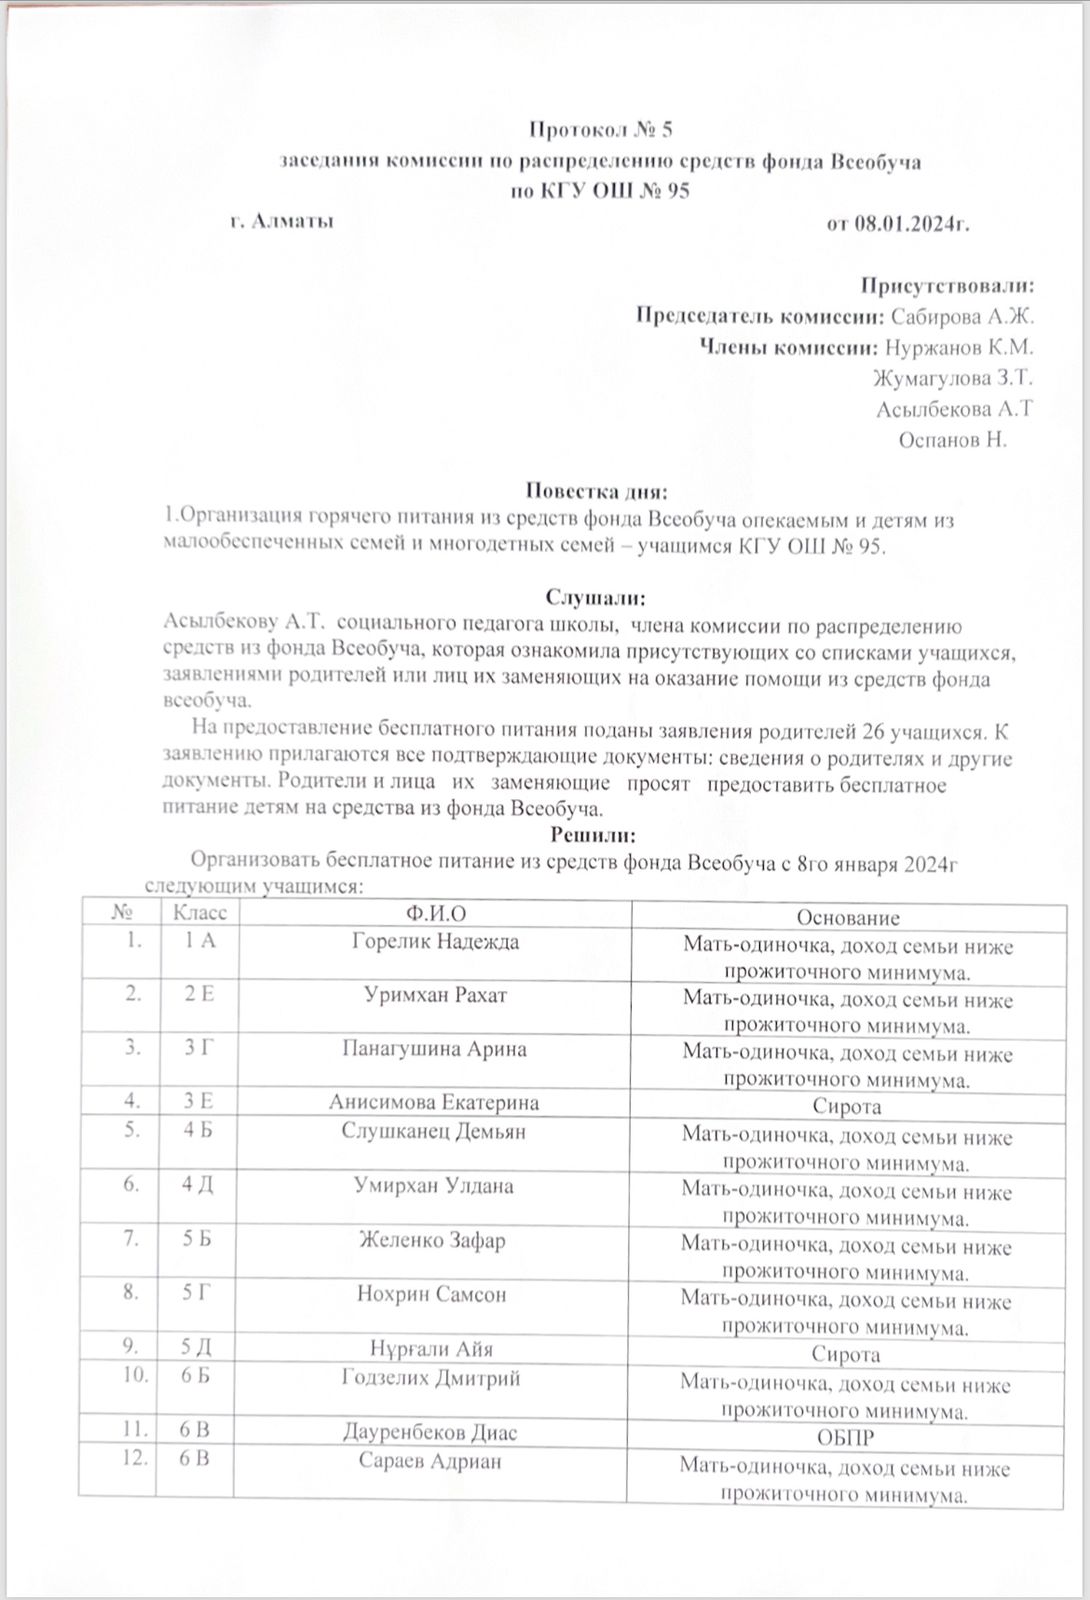 Протокол № 5 заседания комиссии фонда Всеобуч от 08.01.2024 г